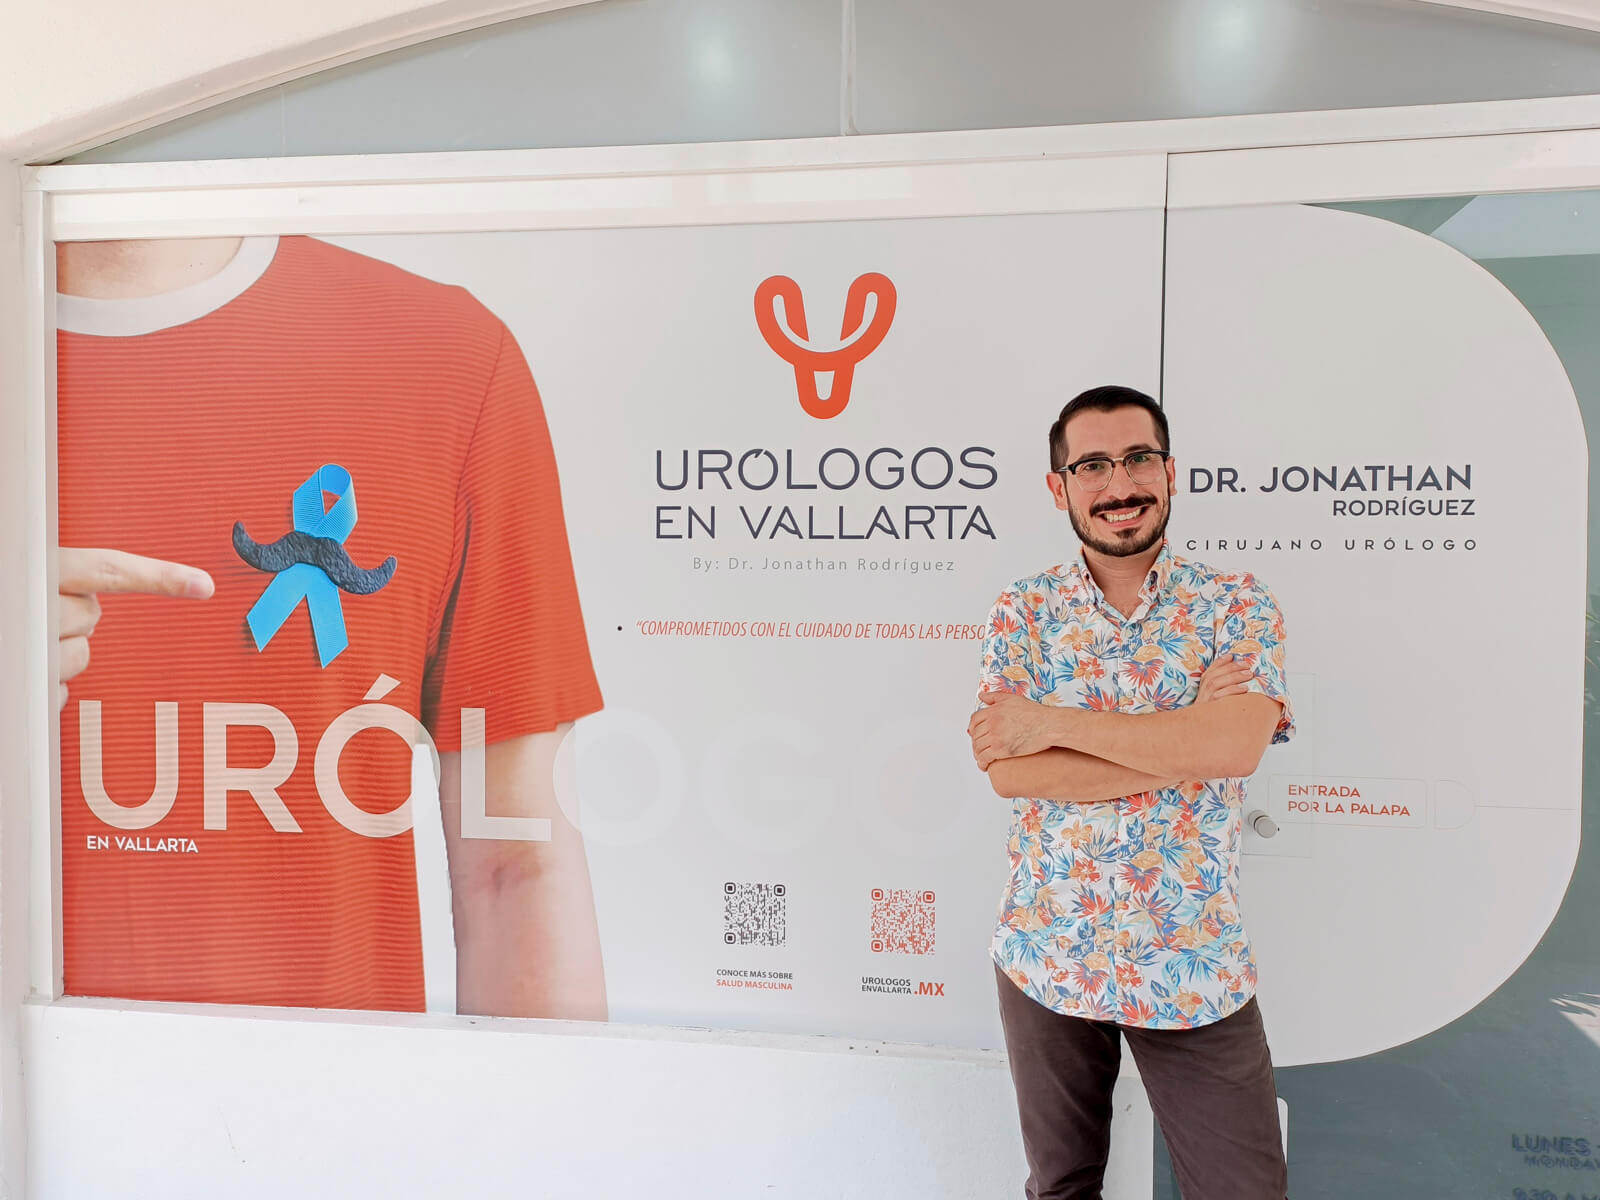 ¡Bienvenidos a nuestra nueva clínica urológica en Puerto Vallarta!